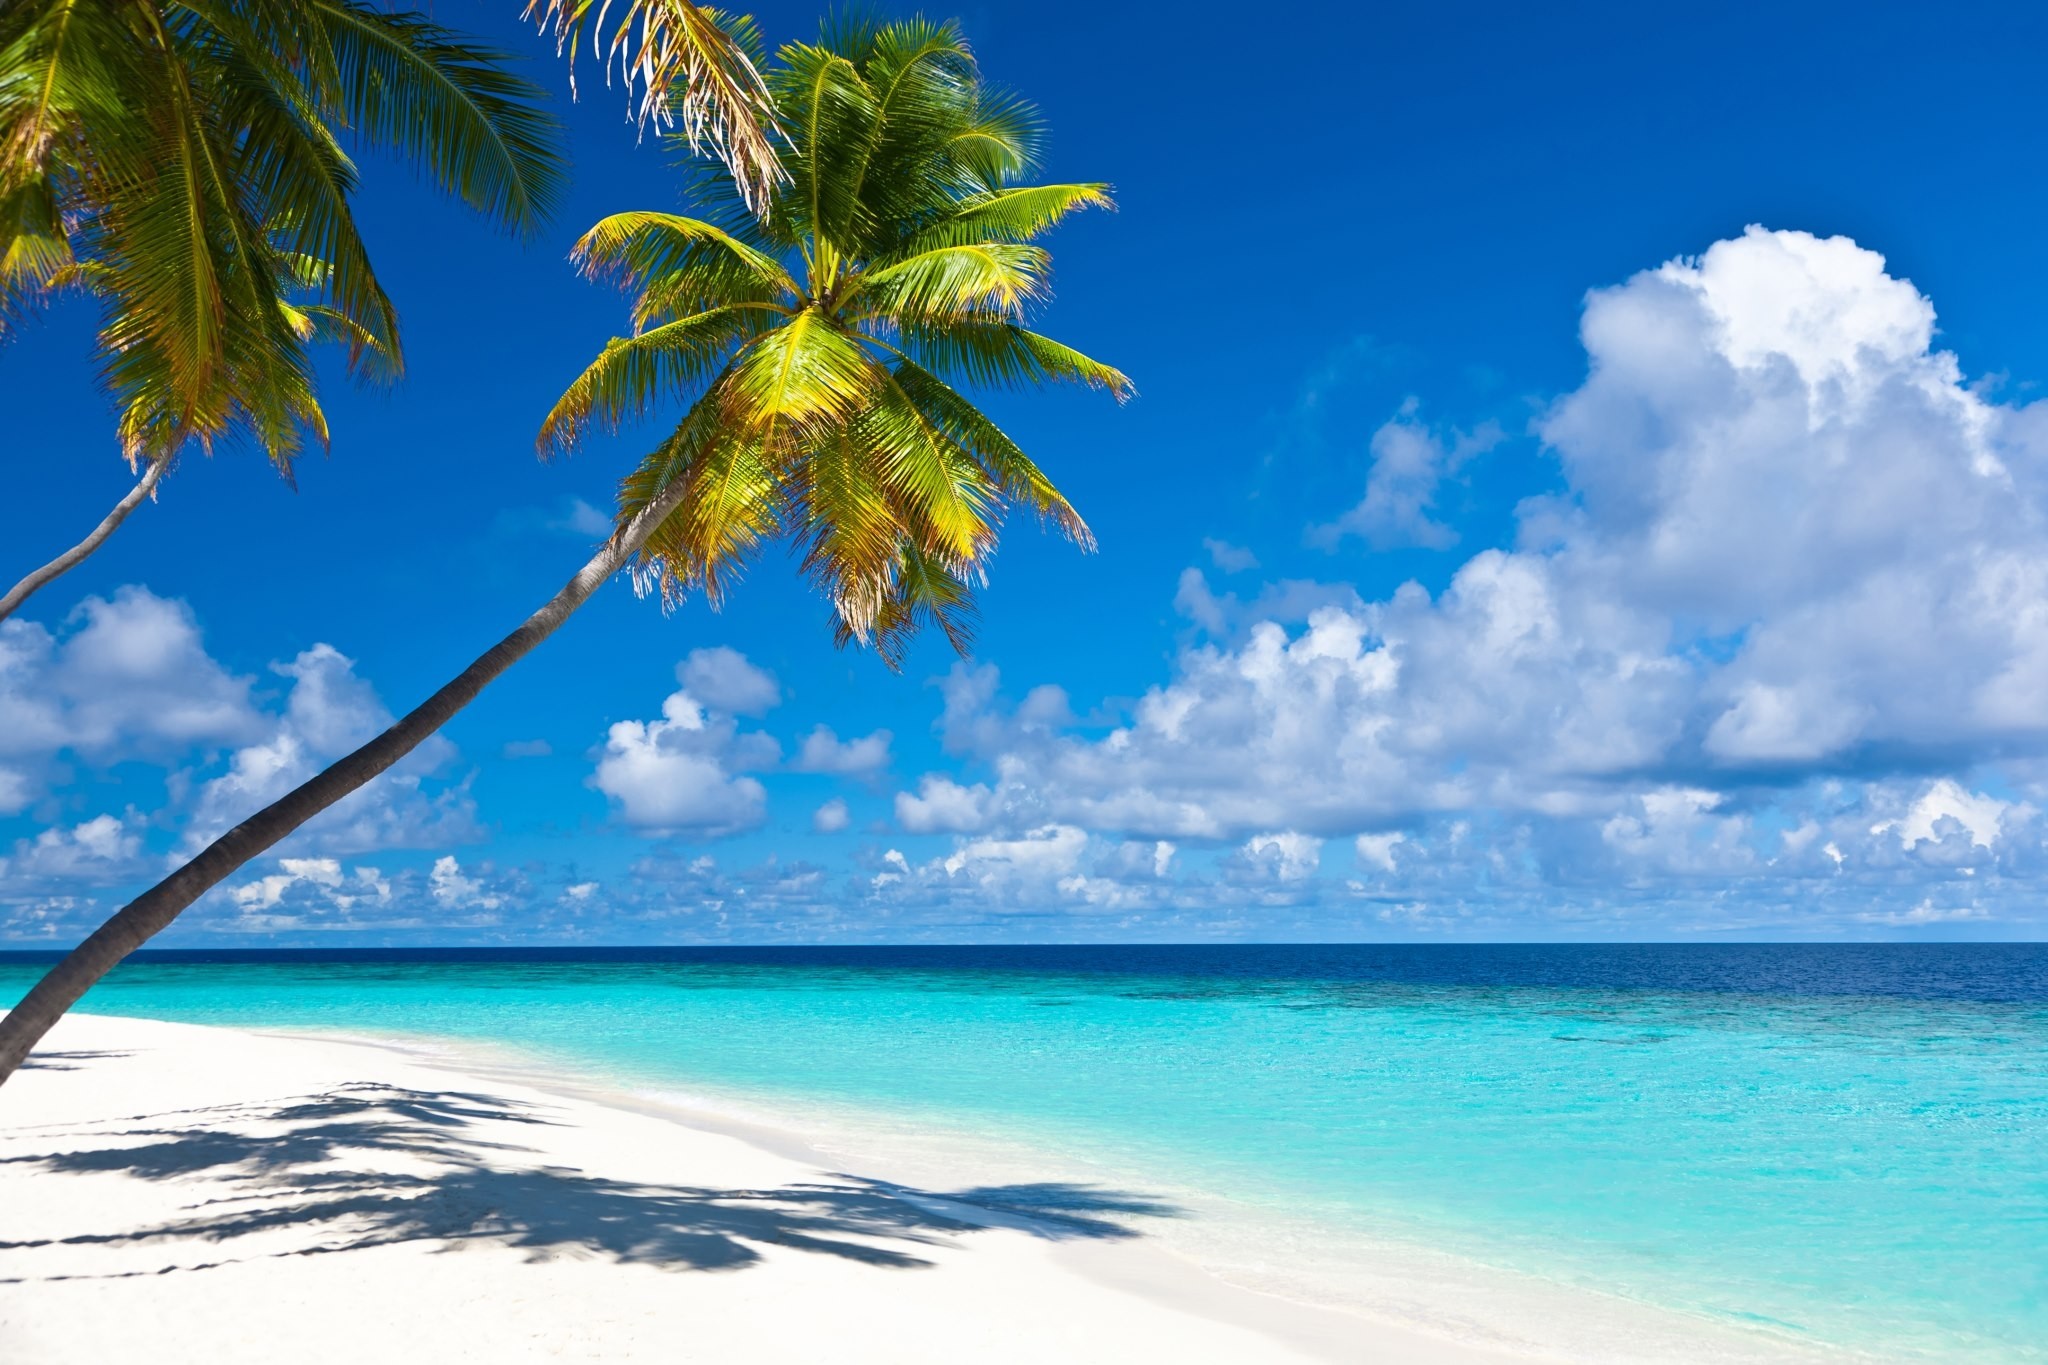 karibik strand tapete,himmel,natur,natürliche landschaft,baum,karibik